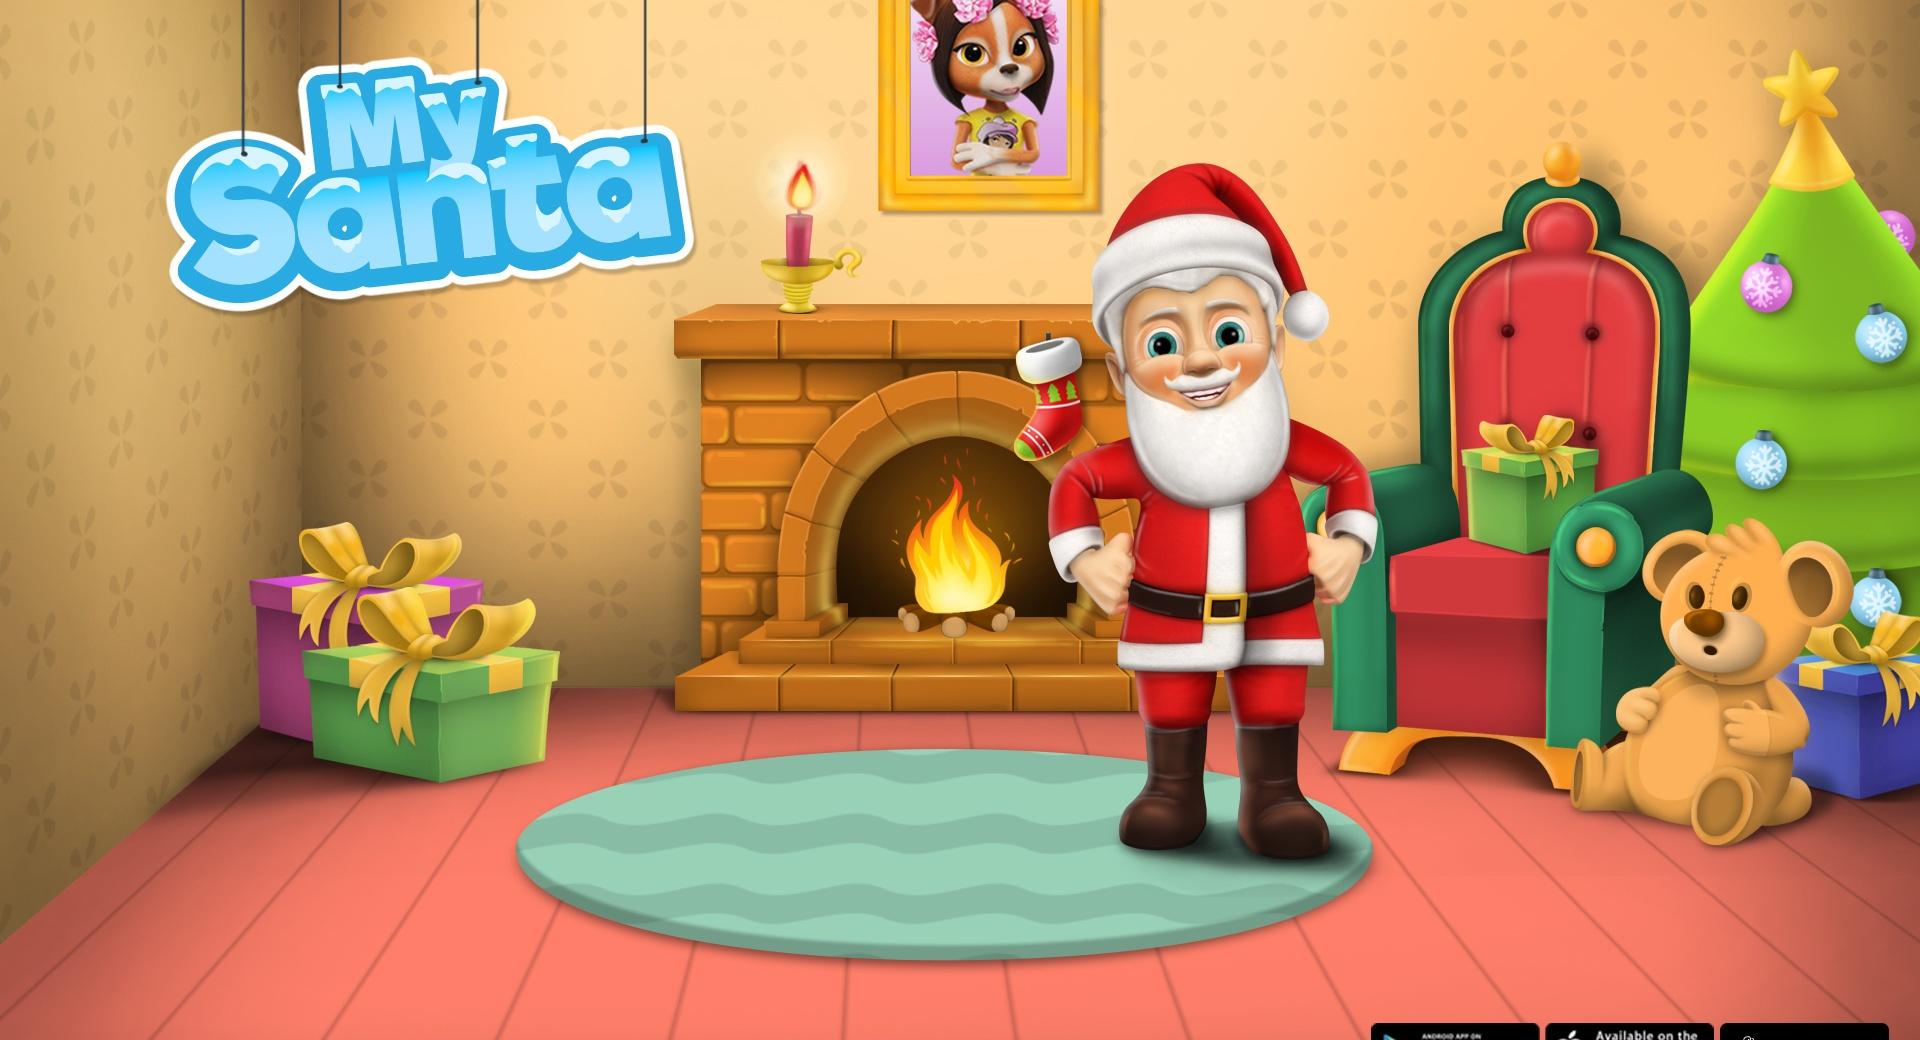 My Santa Claus - Santas Crib at 1280 x 960 size wallpapers HD quality